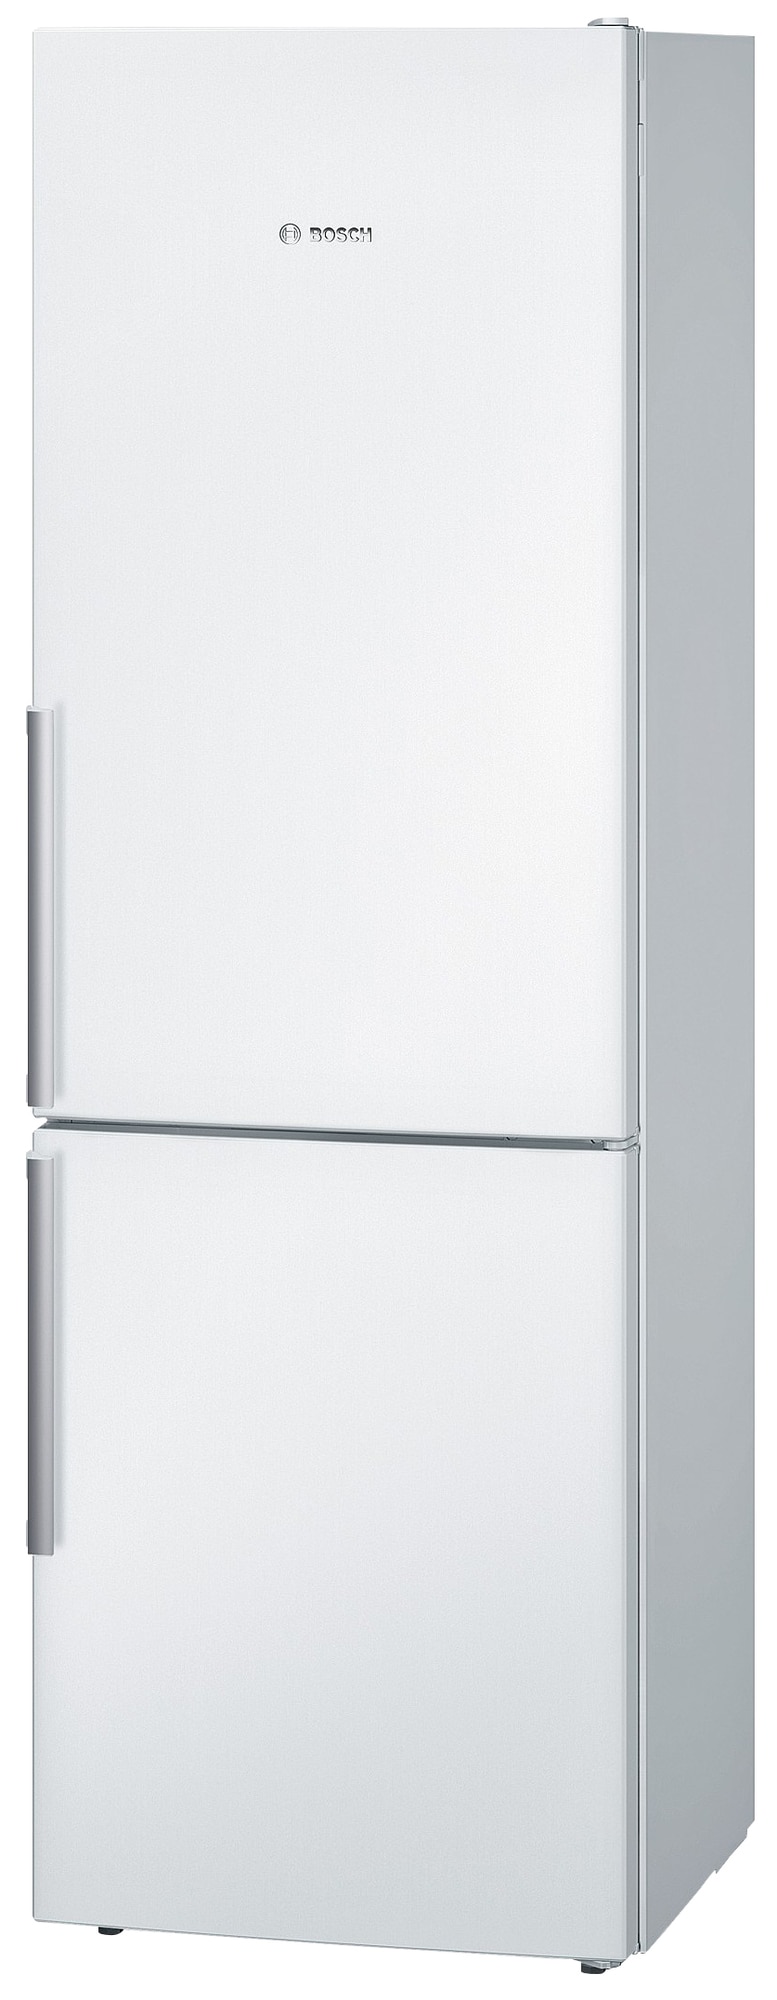 Bosch jääkaappipakastin KGE36BW40 (186 cm) - Jääkaapit - Gigantti